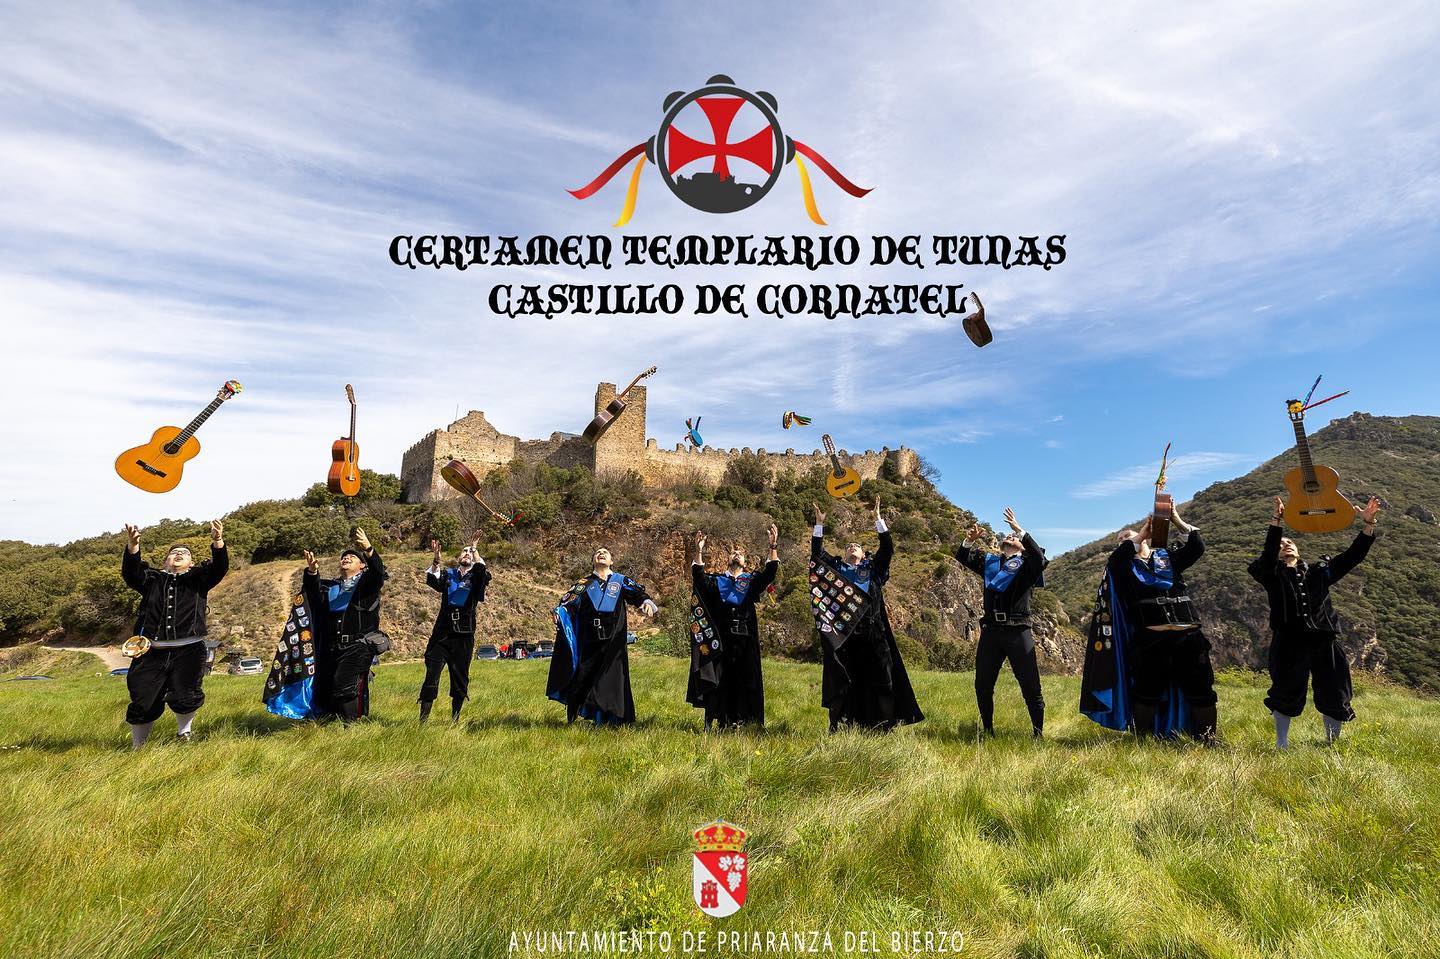 La Tuna de la Uned de Ponferrada organiza en el Castillo de Cornatel el Certamen Templario de Tunas 1